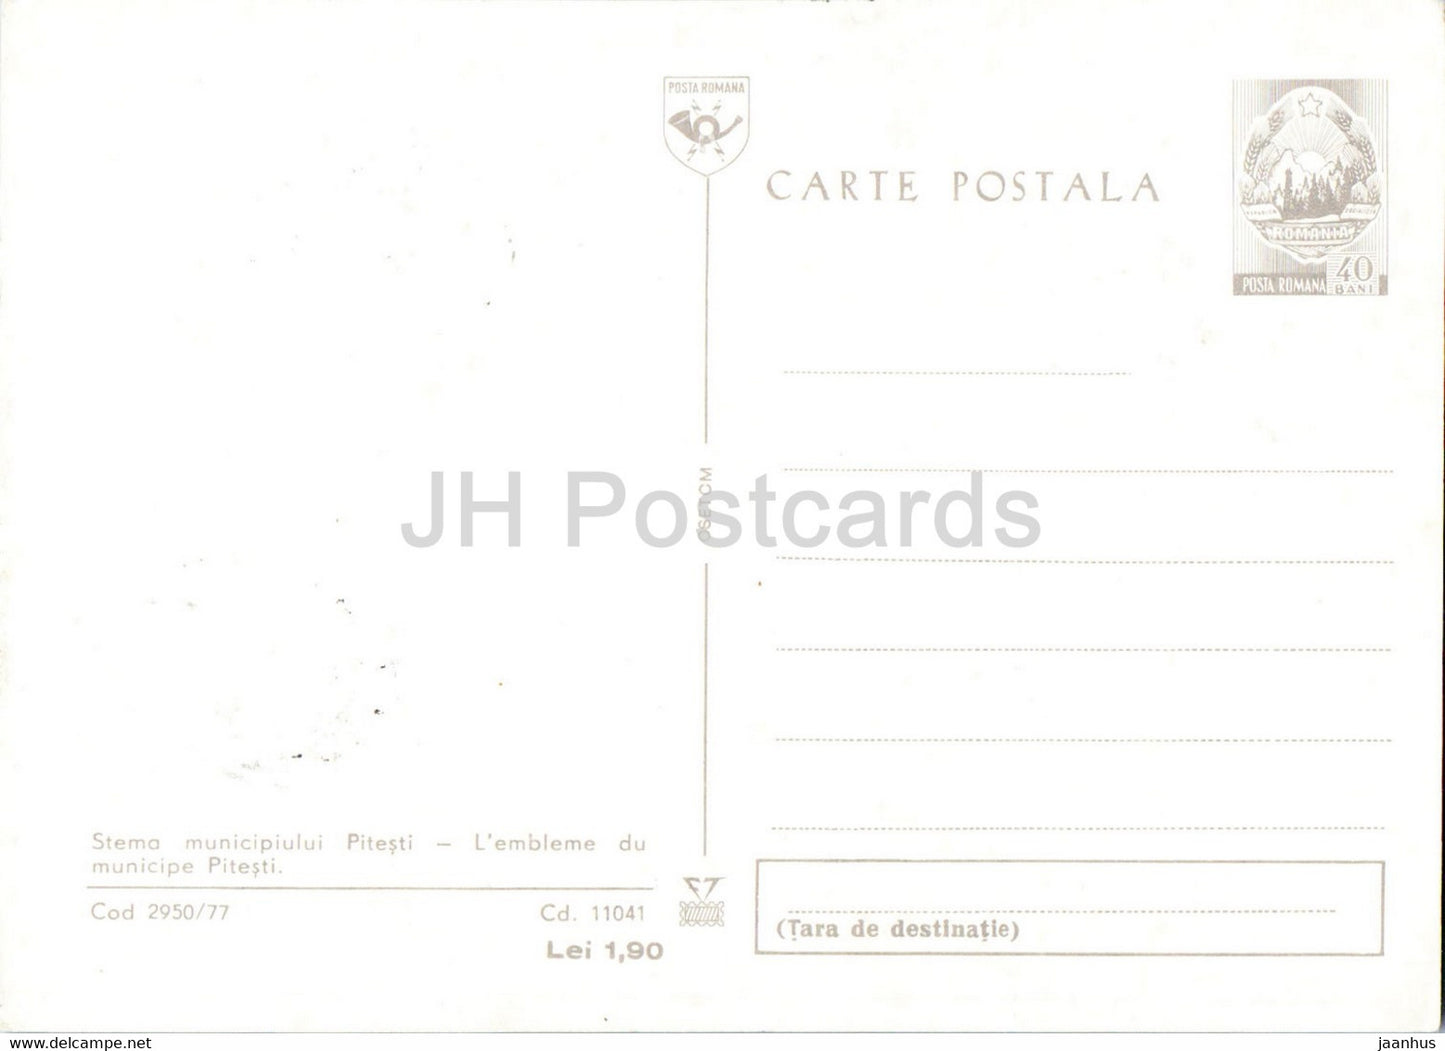 Pitesti - Armoiries - entier postal - Roumanie - inutilisé